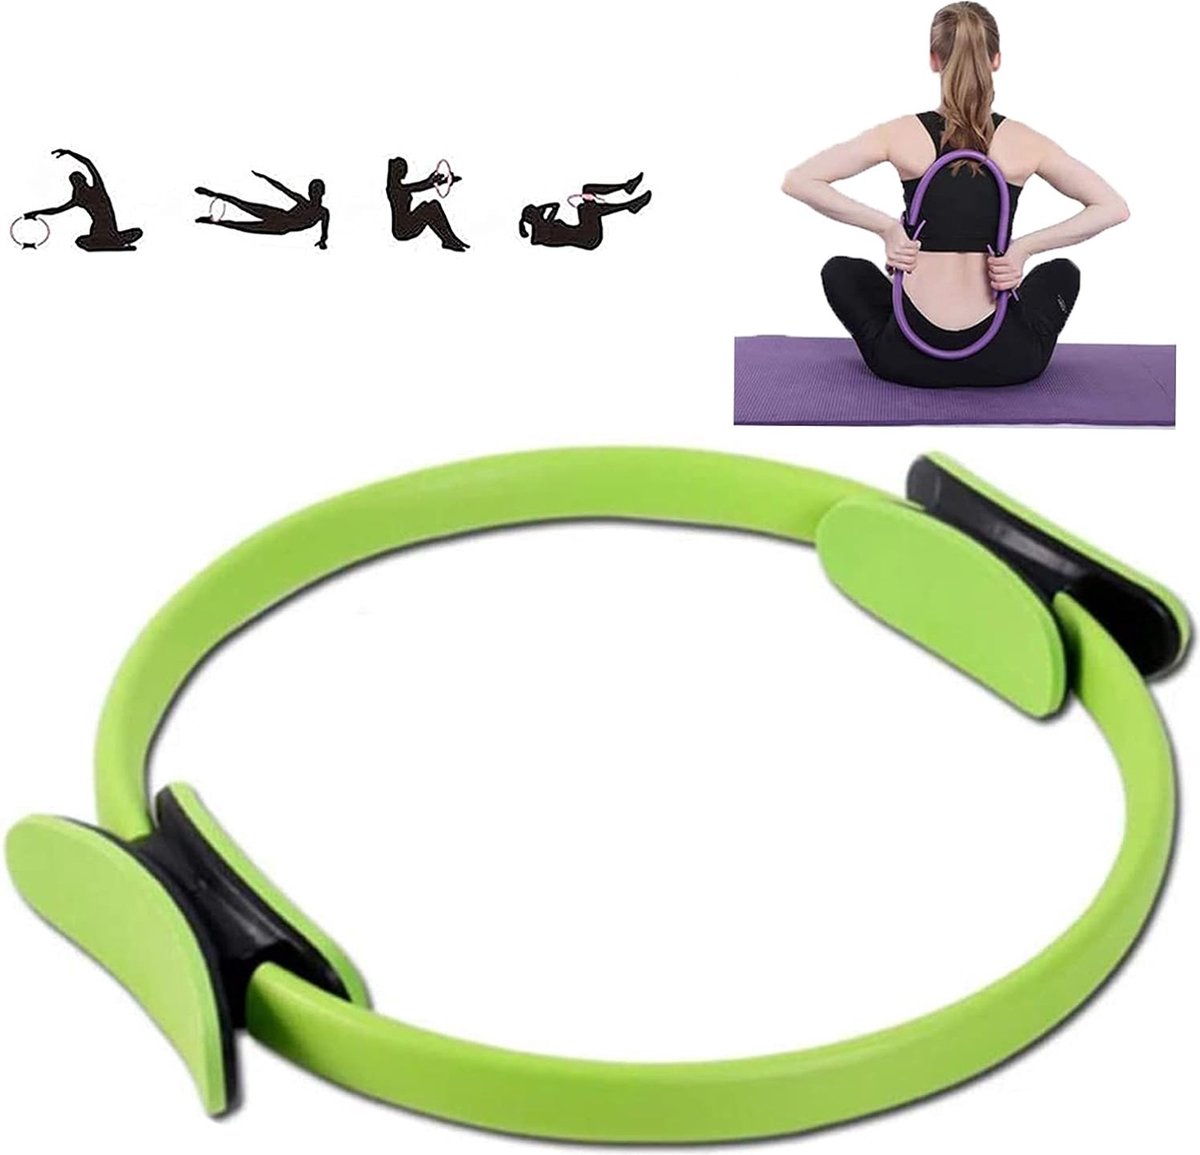 Yogacirkel voor fitness, Pilates-ring, volledige lichaamstraining, trainingsring met hoge sterkte voor het aanpassen van de houding, flexibel.